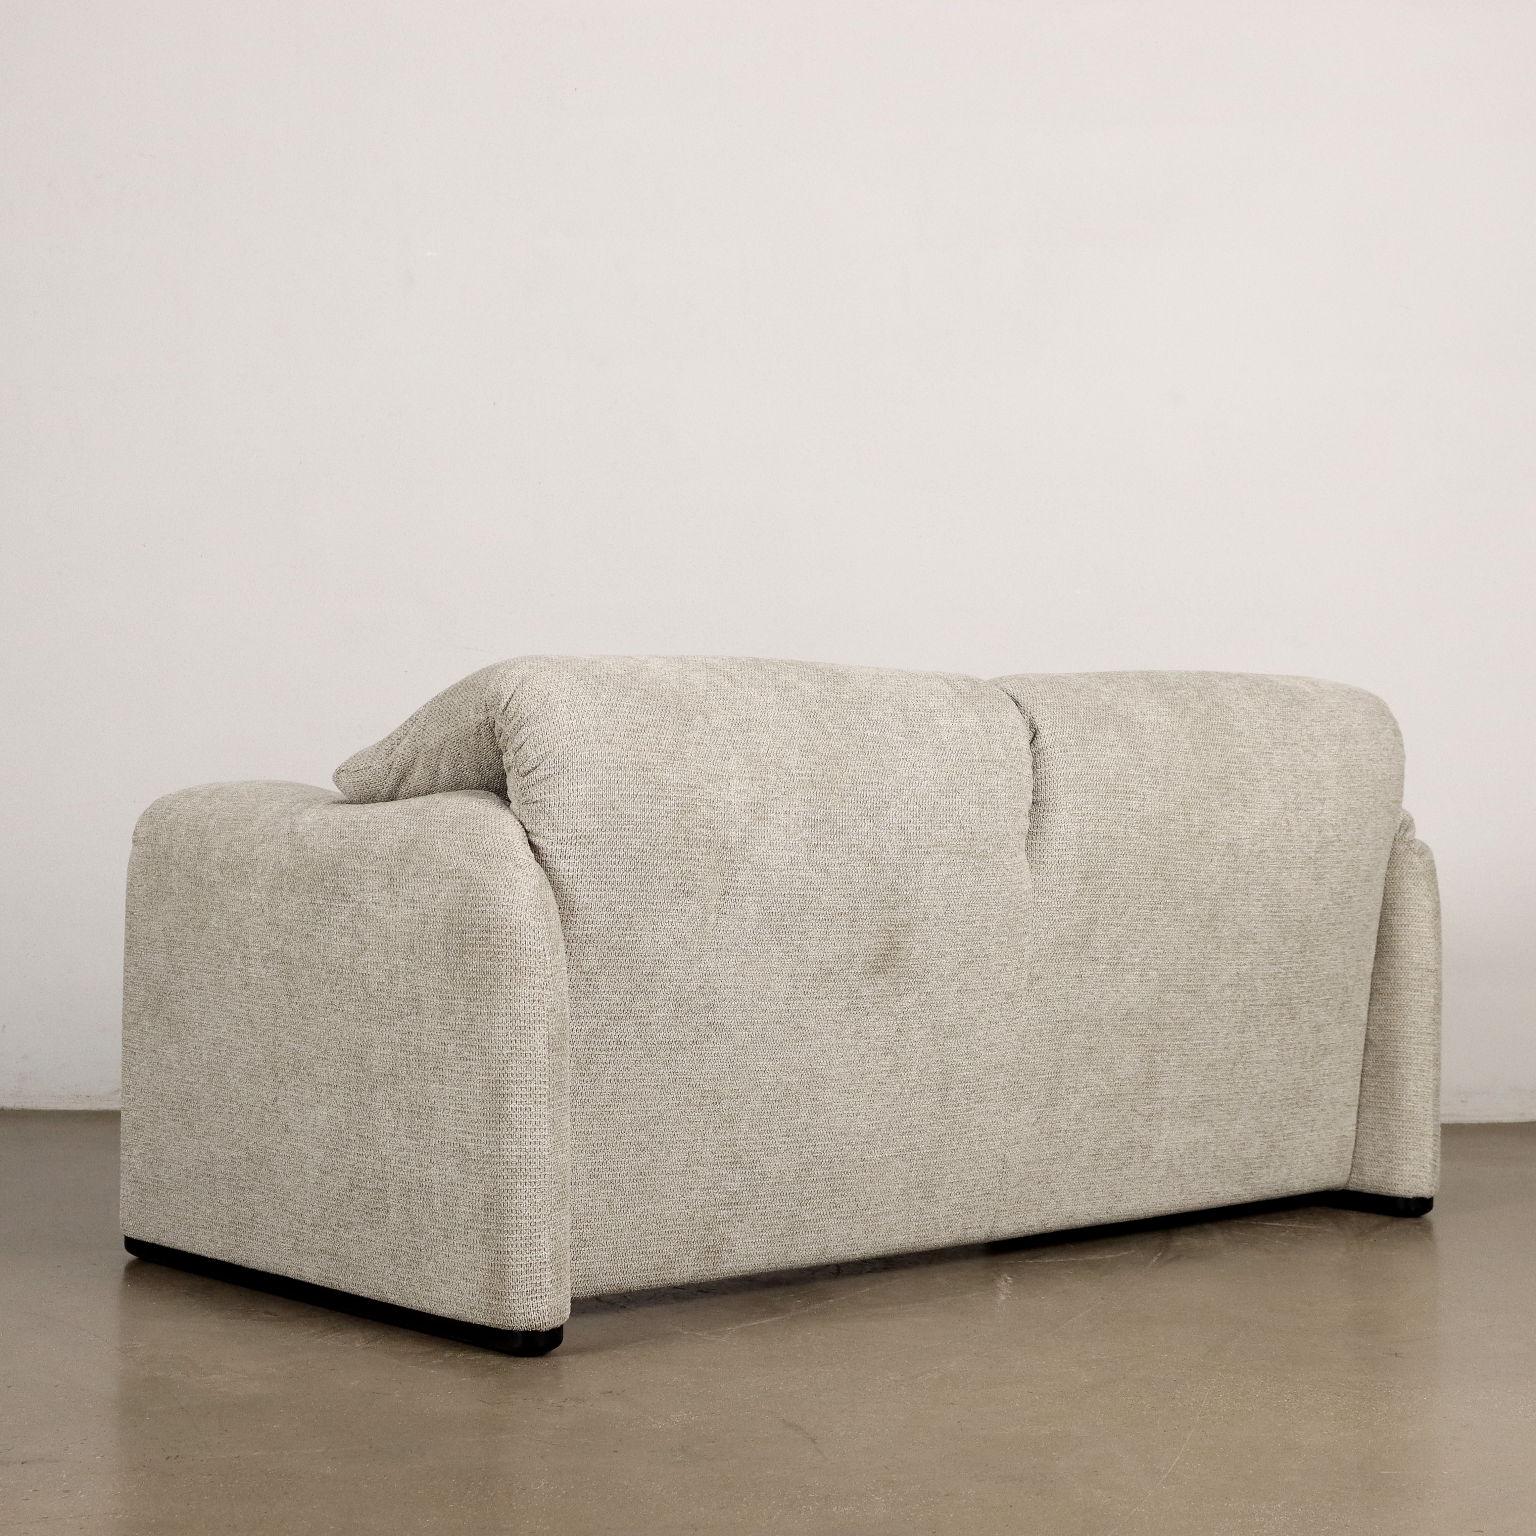 Maralunga sofa by Vico Magistretti for Cassina Anni 80 For Sale 3